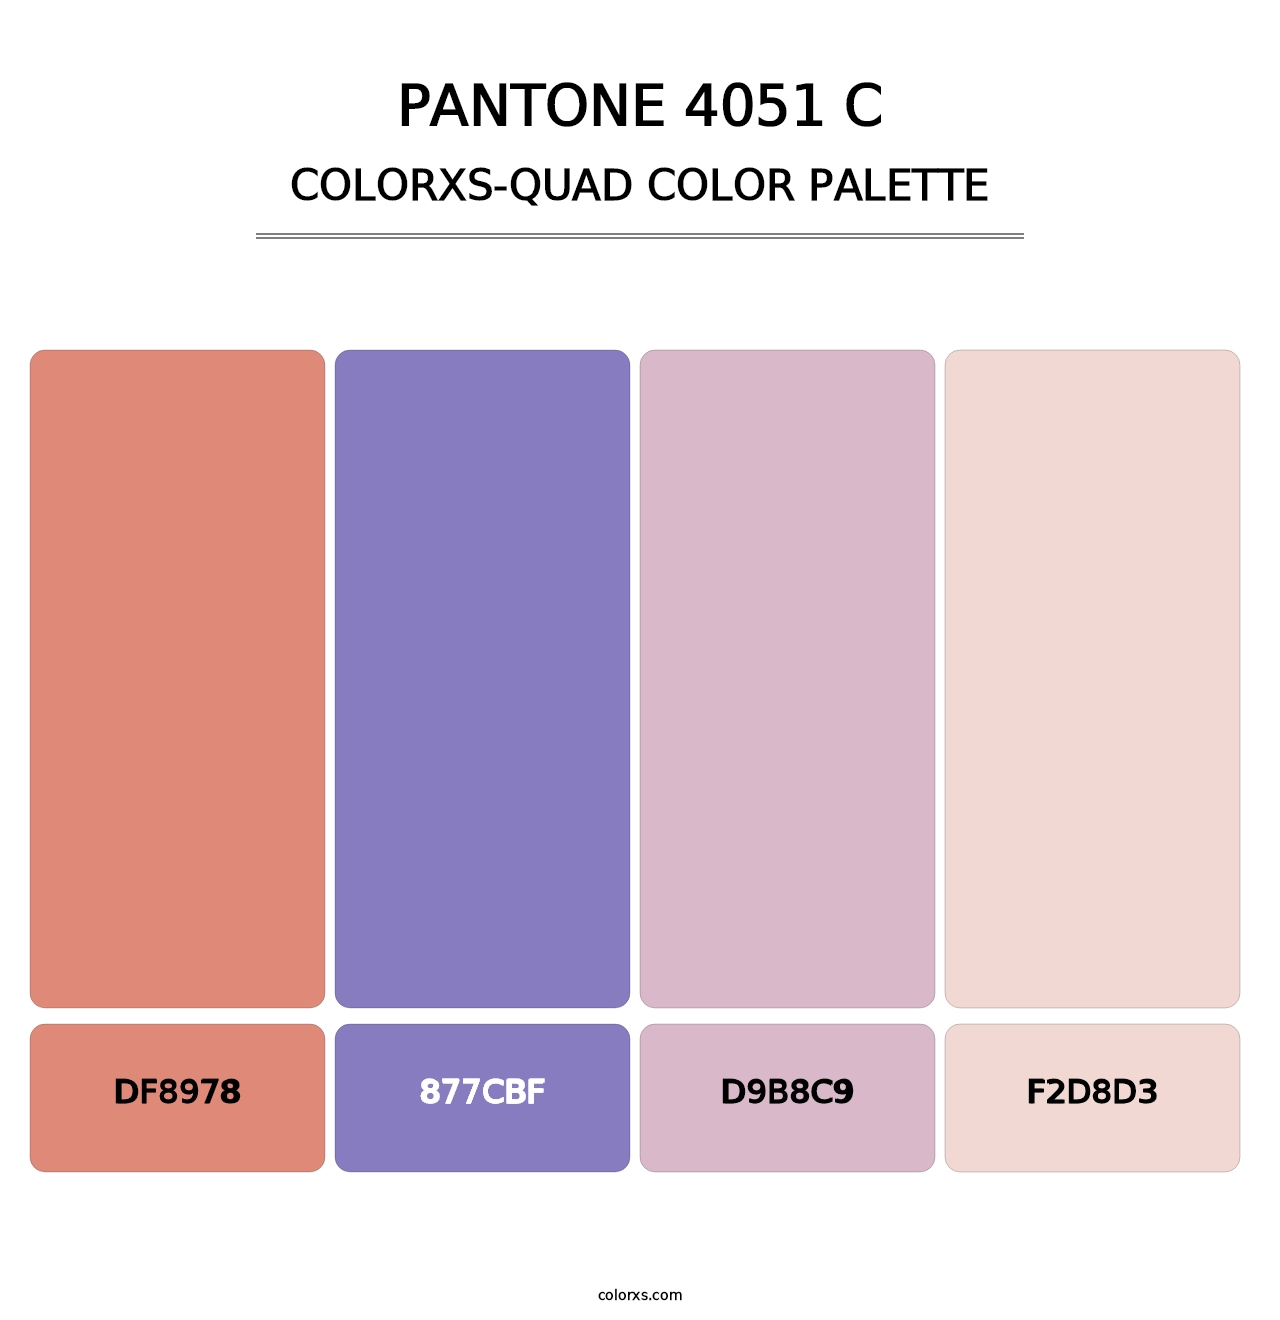 PANTONE 4051 C - Colorxs Quad Palette